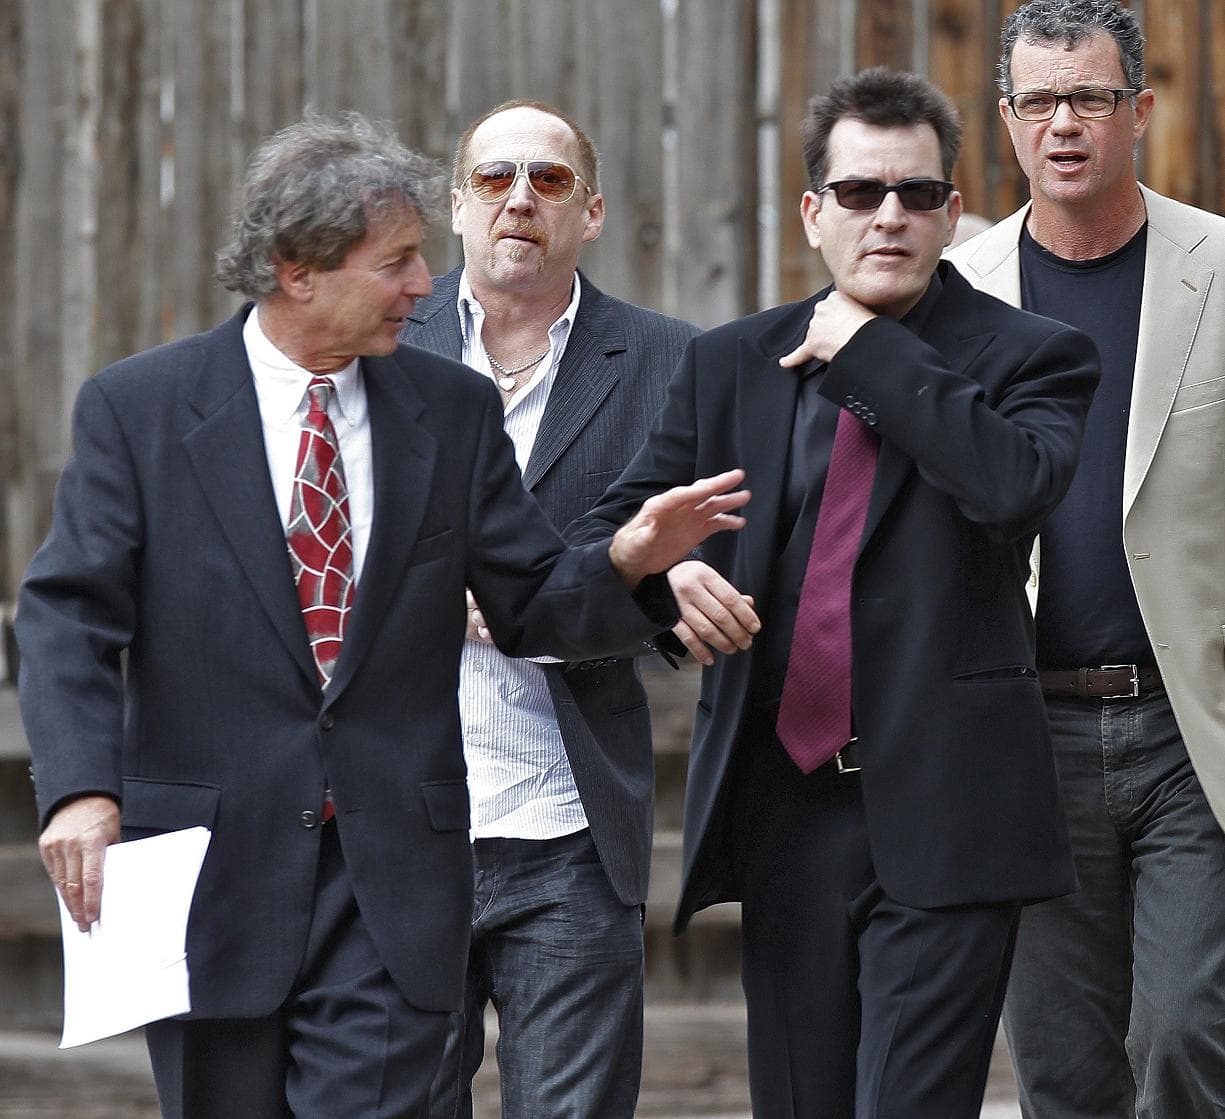 Sztárügyvéddel perlik Charlie Sheent az exei